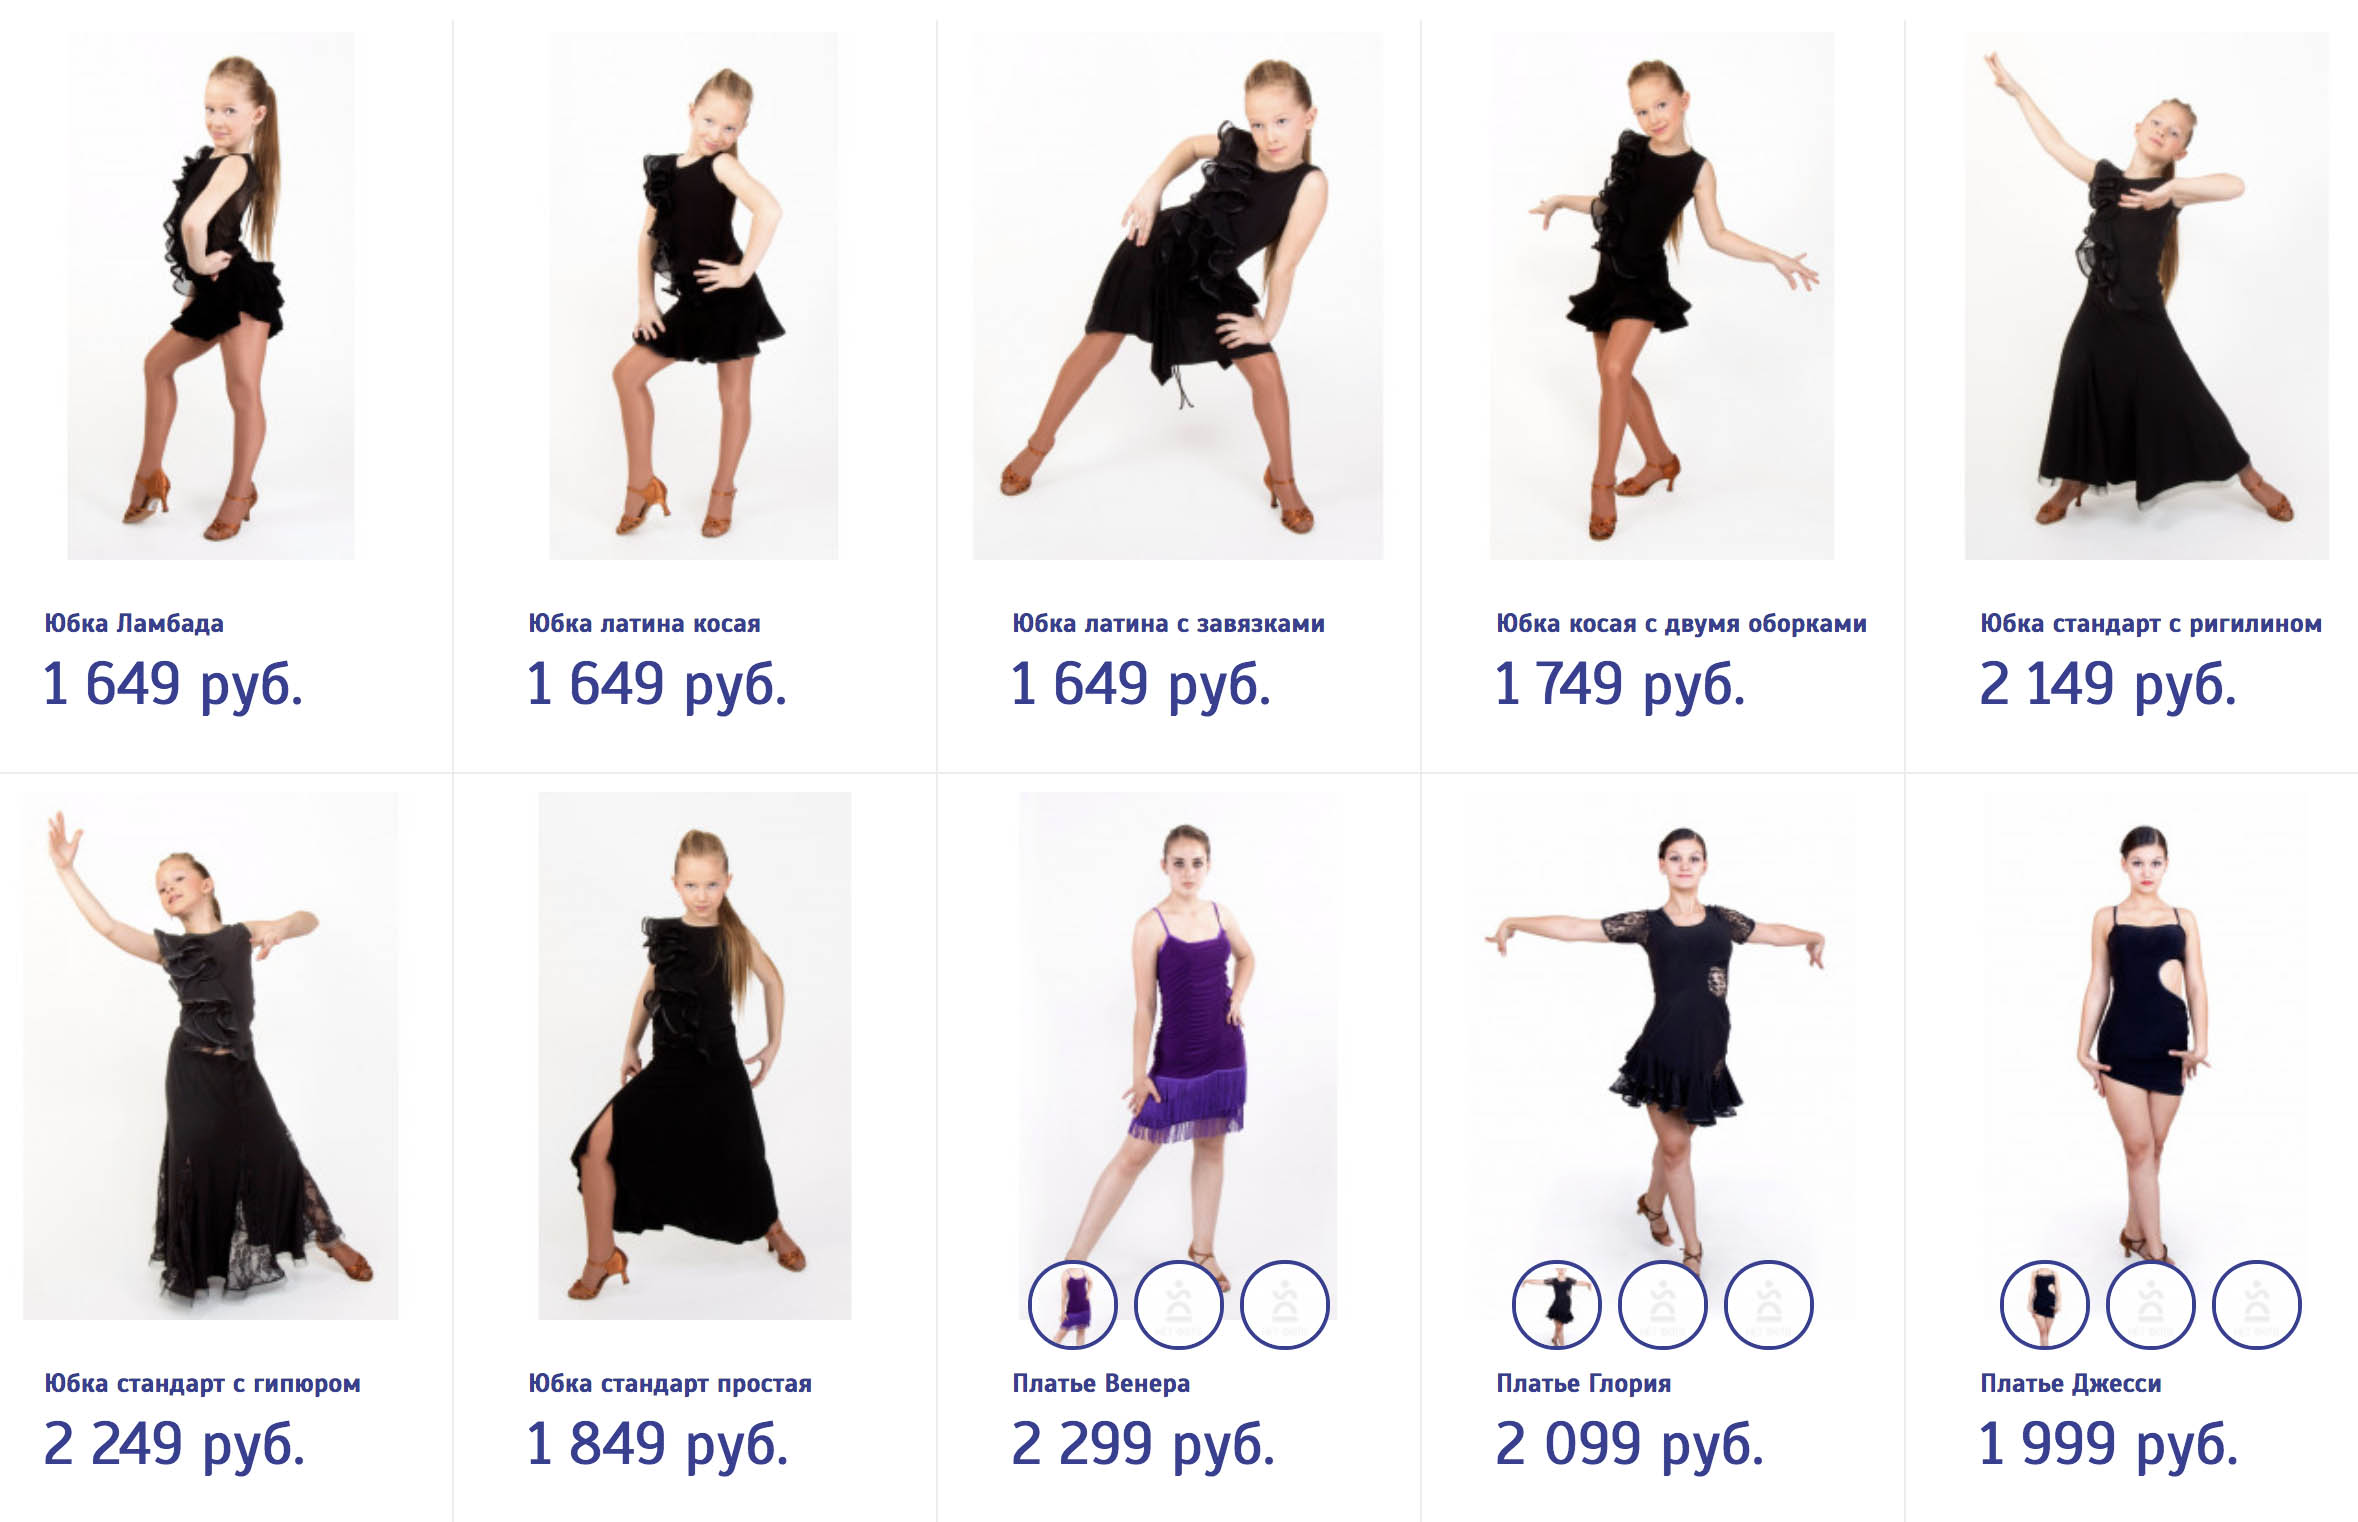 Трикотажное тренировочное платье можно купить за 1700—2000 ₽. Источник: danceshop.ru